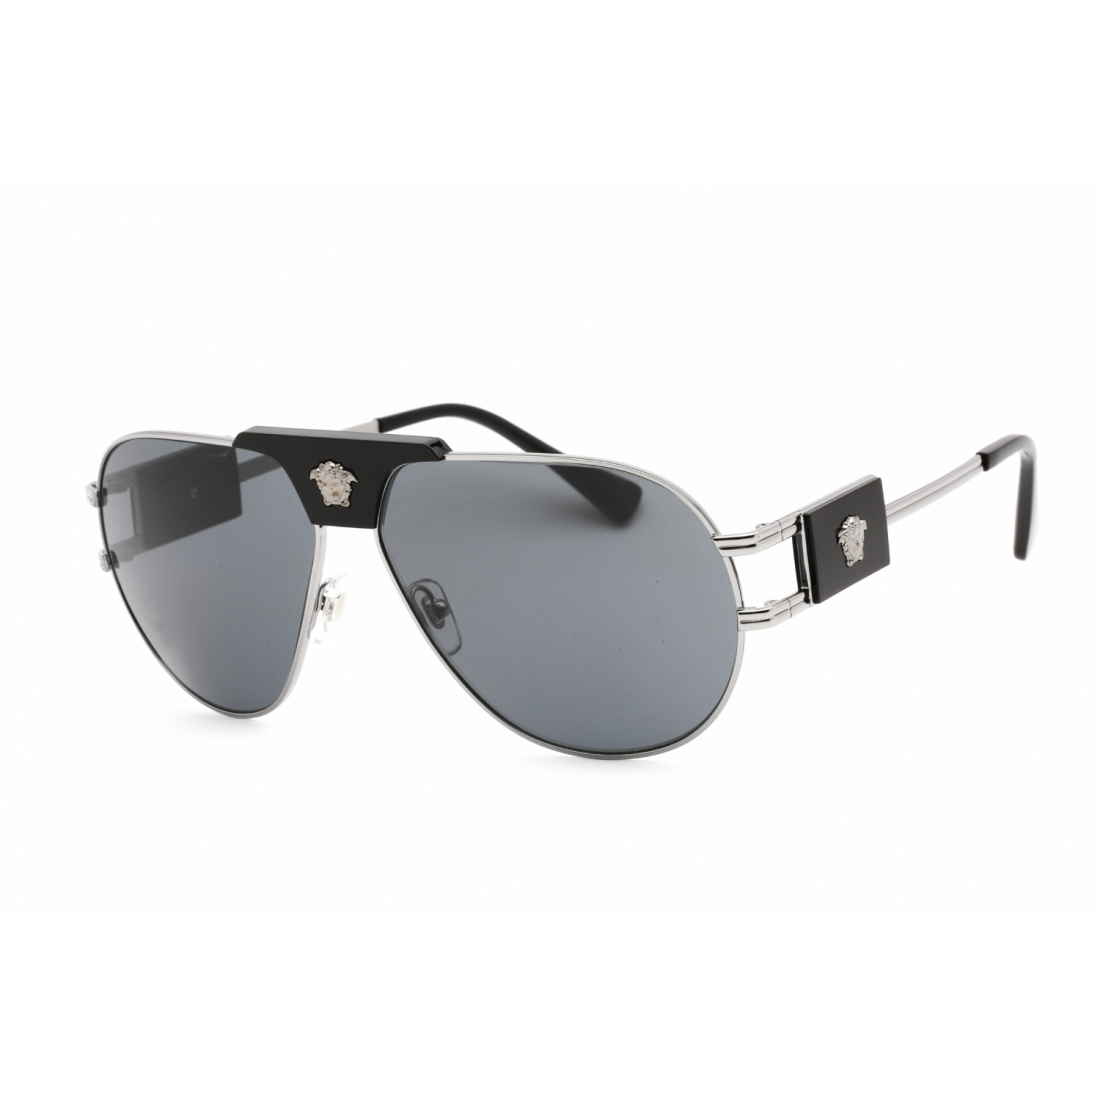 Men's '0VE2252' Sunglasses